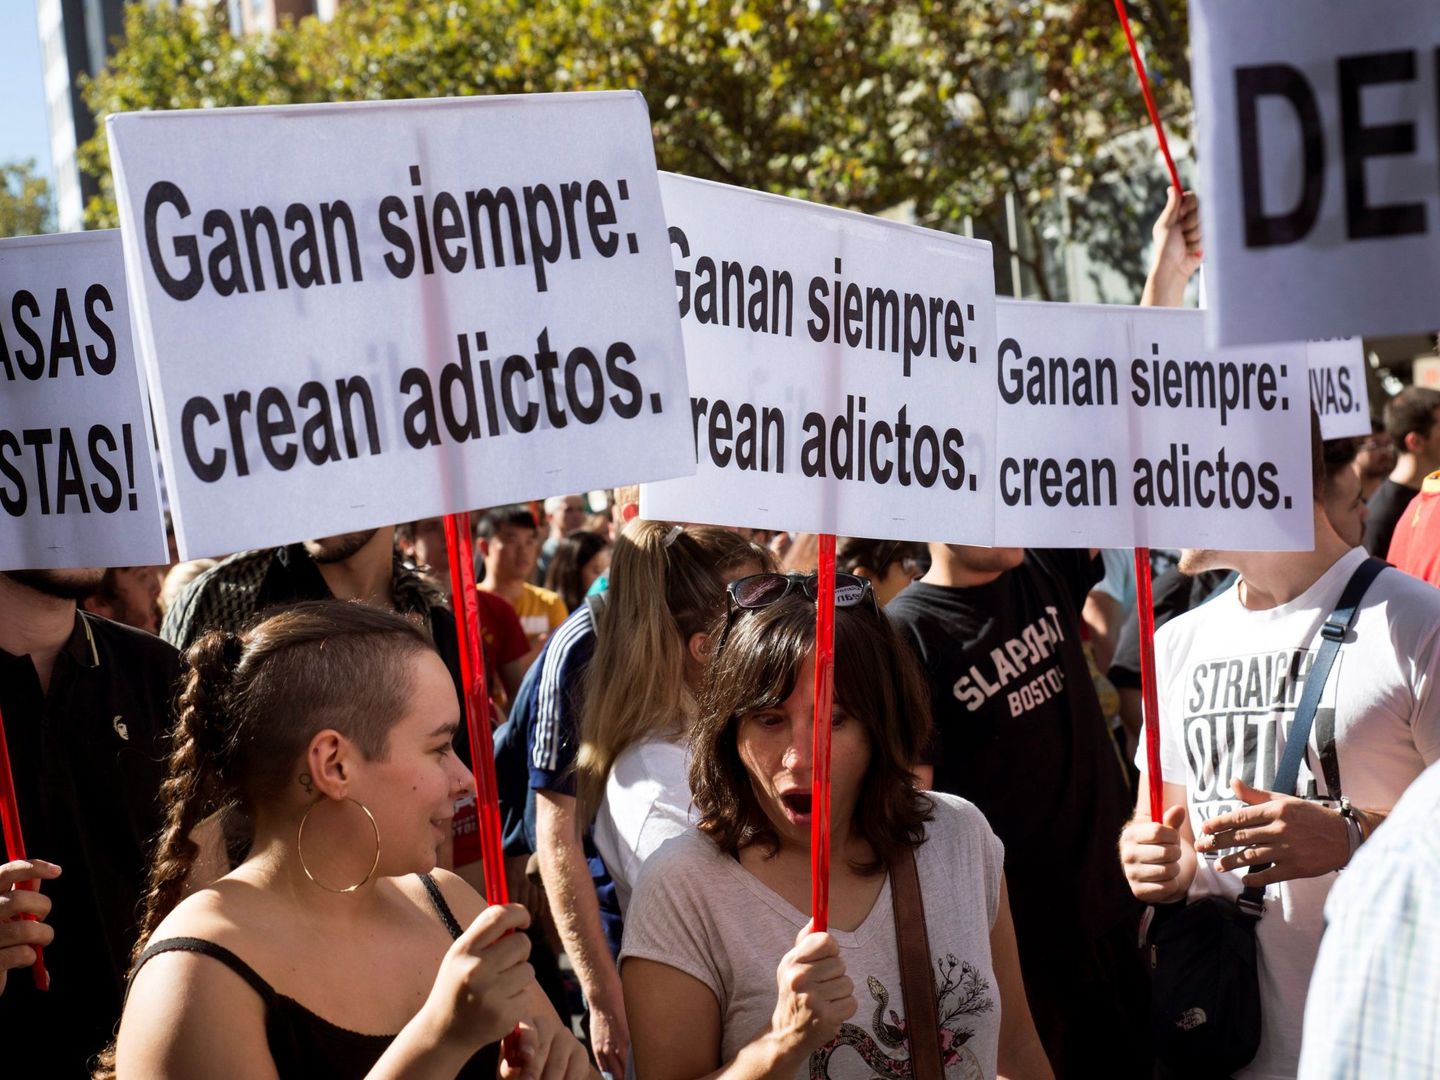 Manifestación el pasado octubre contra las casas de apuestas en los barrios de Madrid. (EFE)